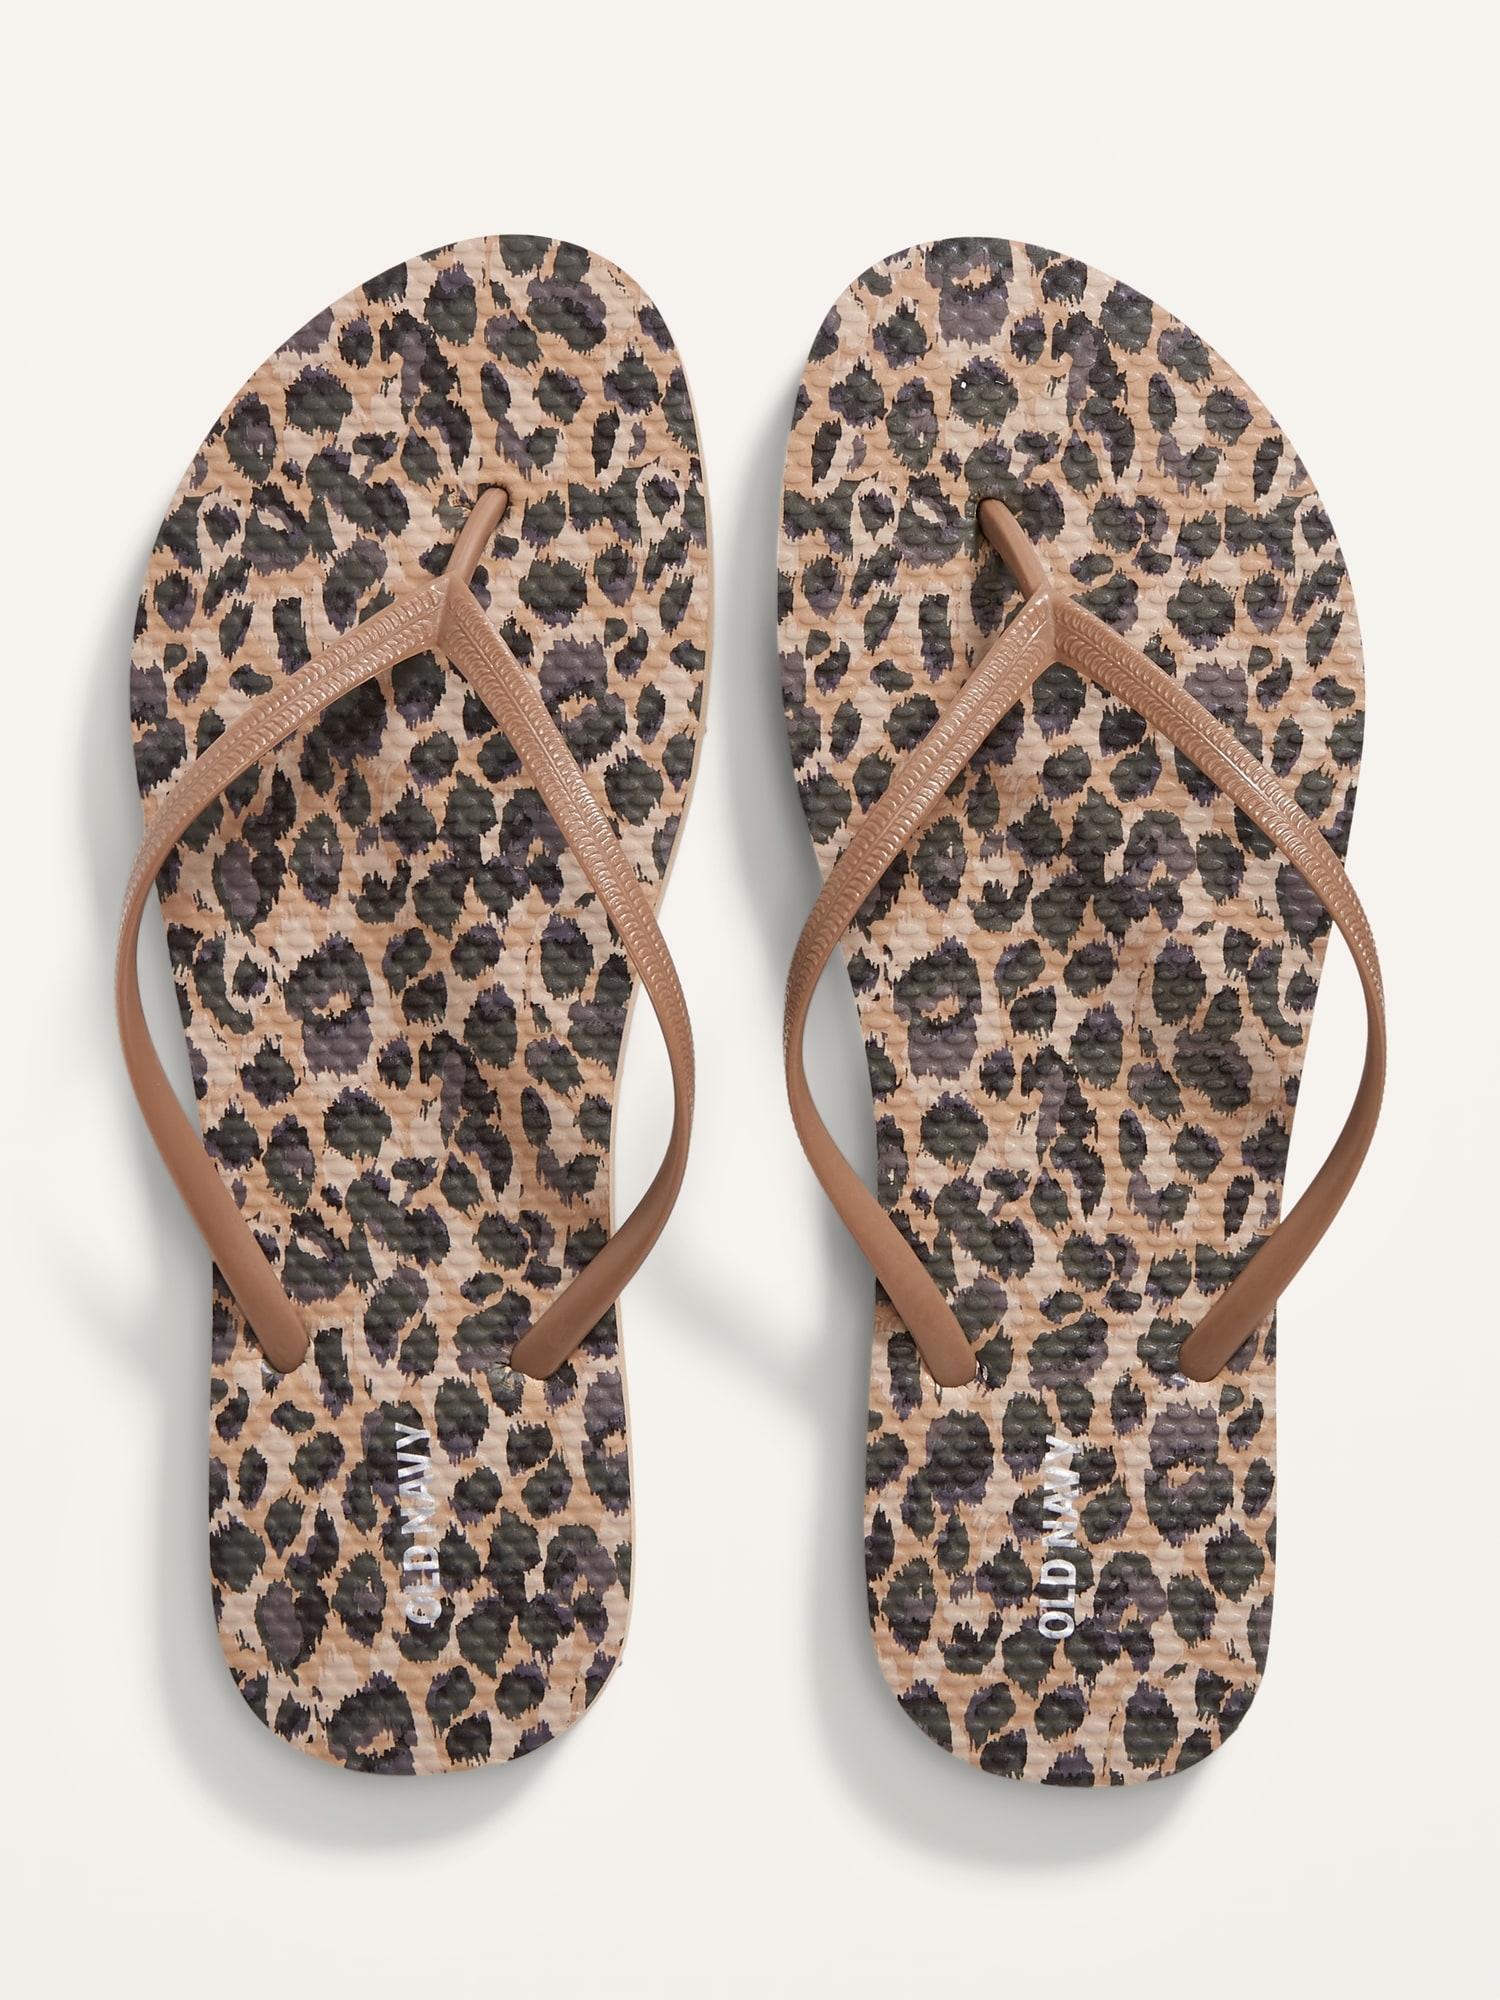 Patterned Plant-Based Flip-Flop Sandals for Women | Old Navy